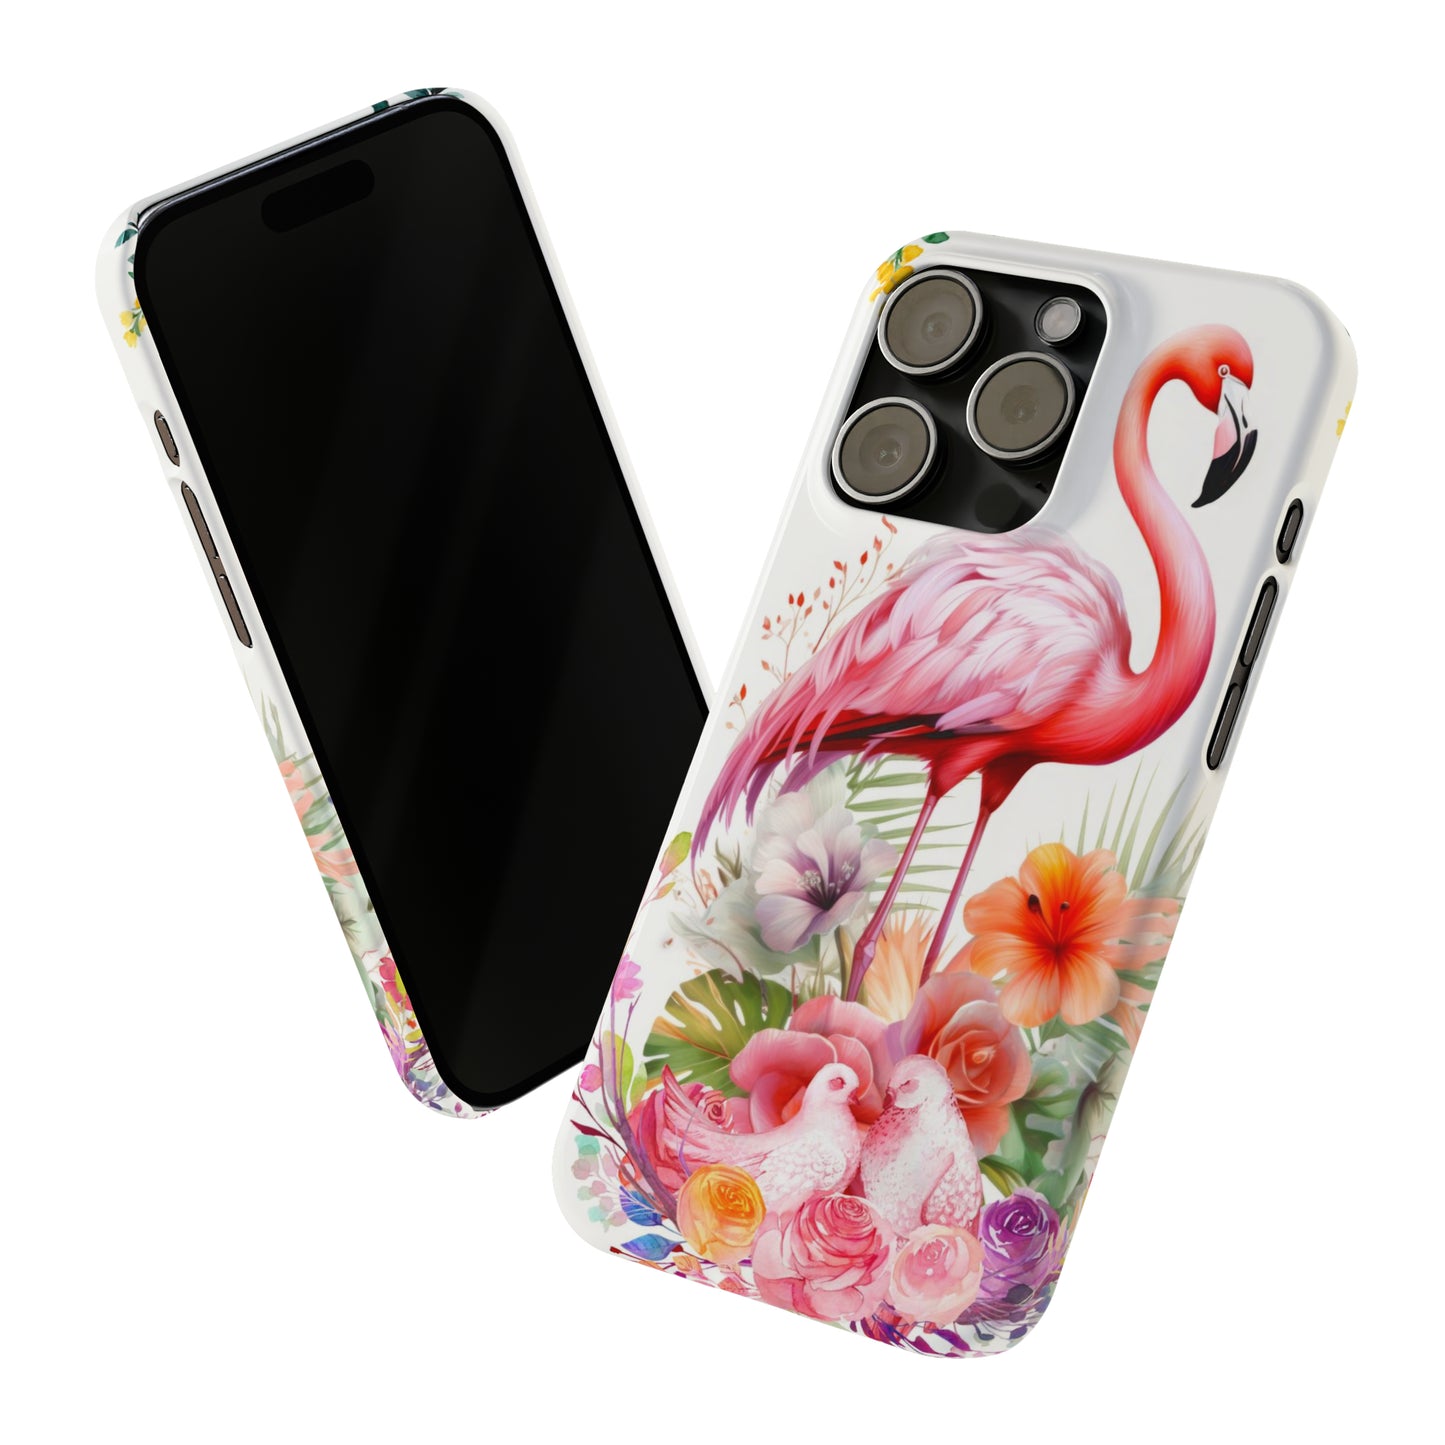 Elegant Flamingo iPhone Case